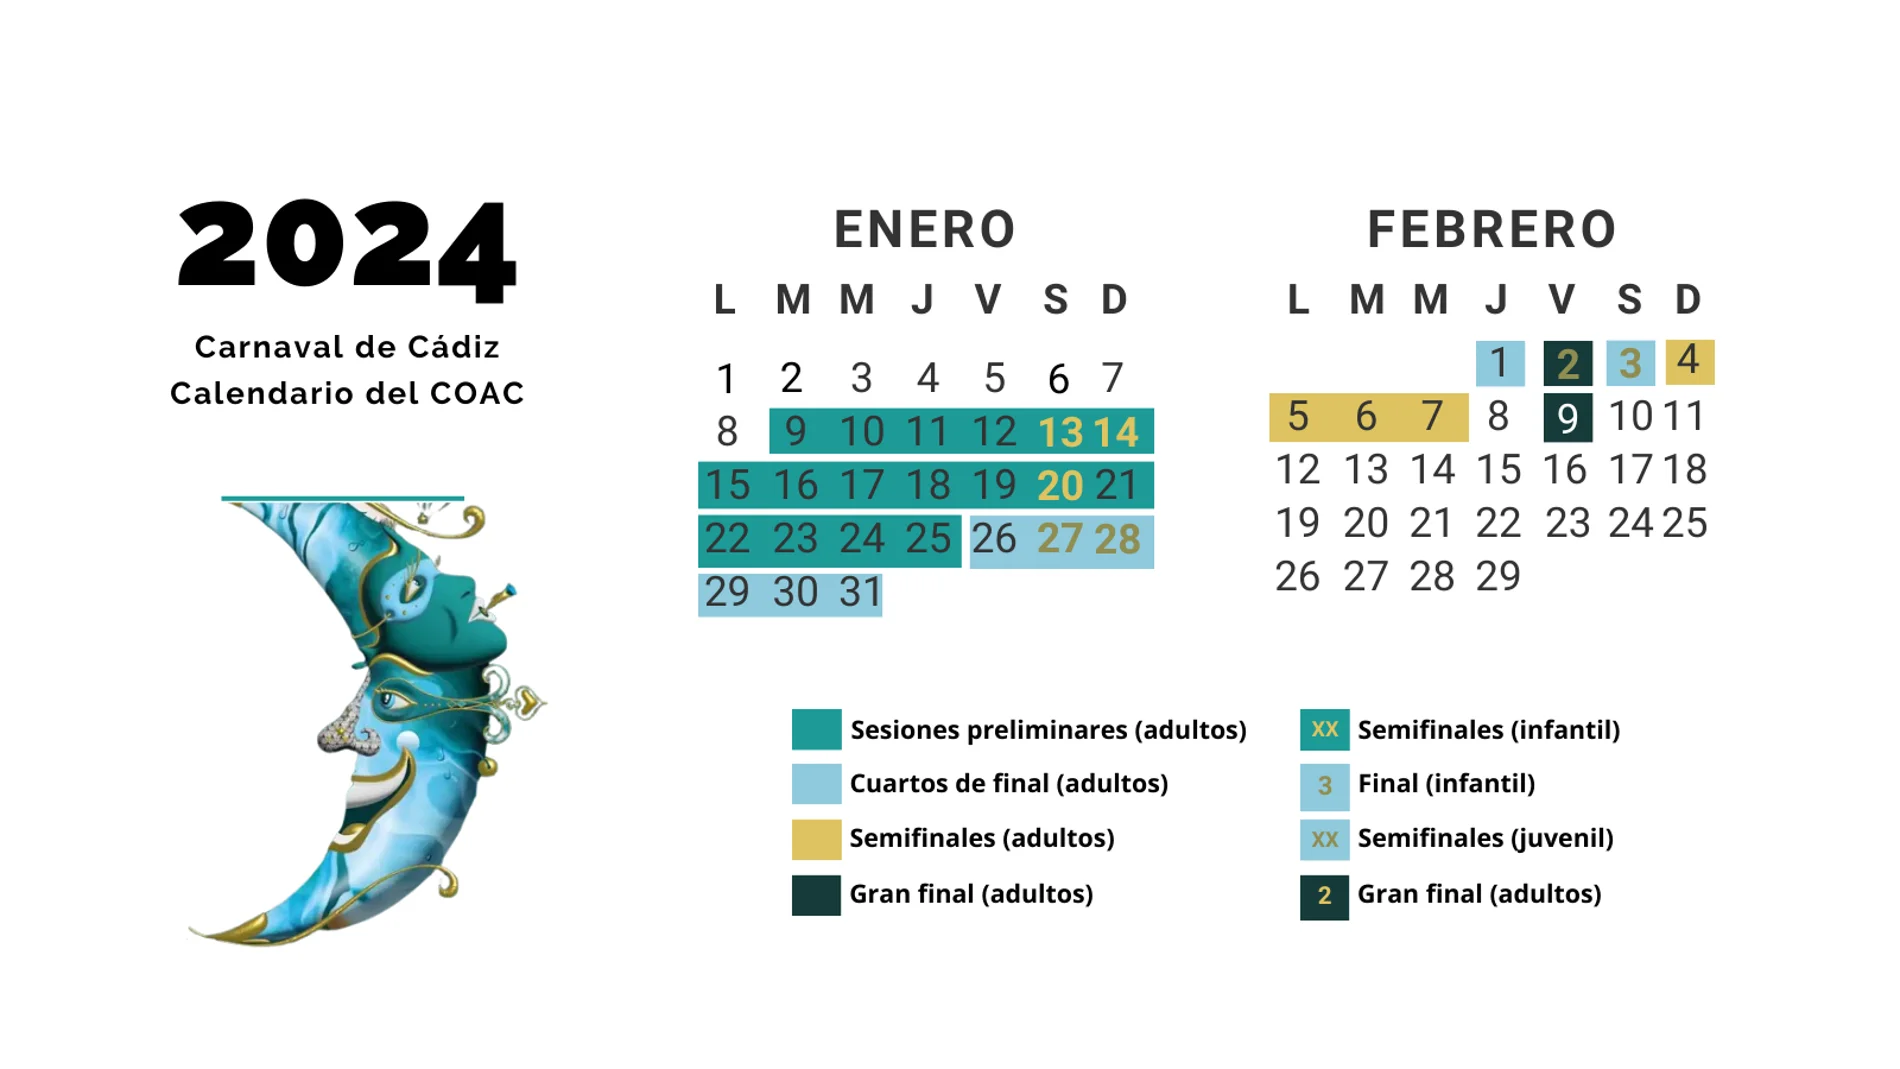 Calendario del Carnaval de Cádiz (COAC) 2024: preliminares, cuartos, semifinales y gran final